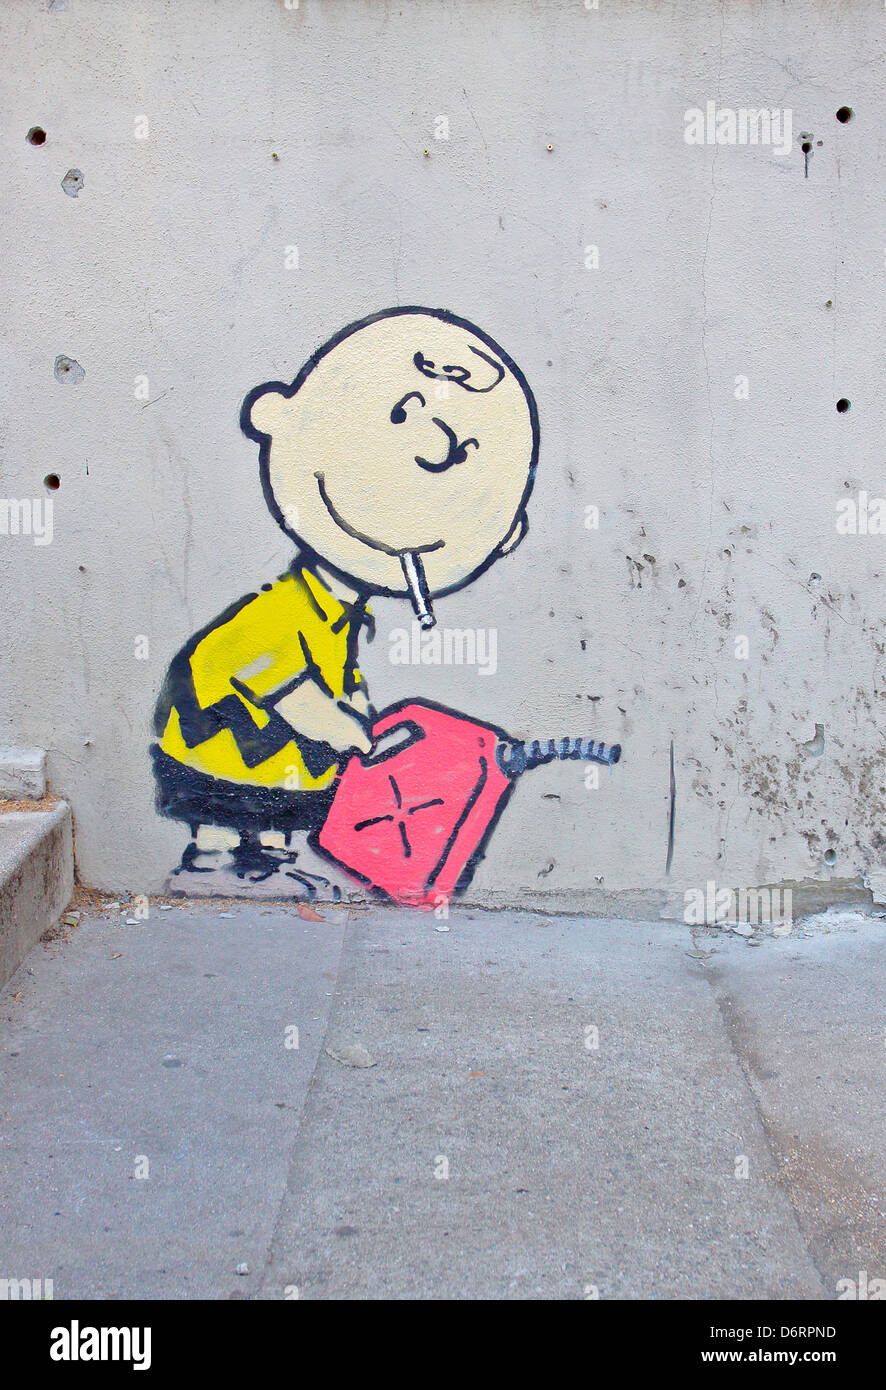 Ein weiterer Banksy Kunstwerk erschien in der Stadt Los Angeles. Eine Schablone mit Kinder Charakter Charlie Brown Rauchen und Stockfoto